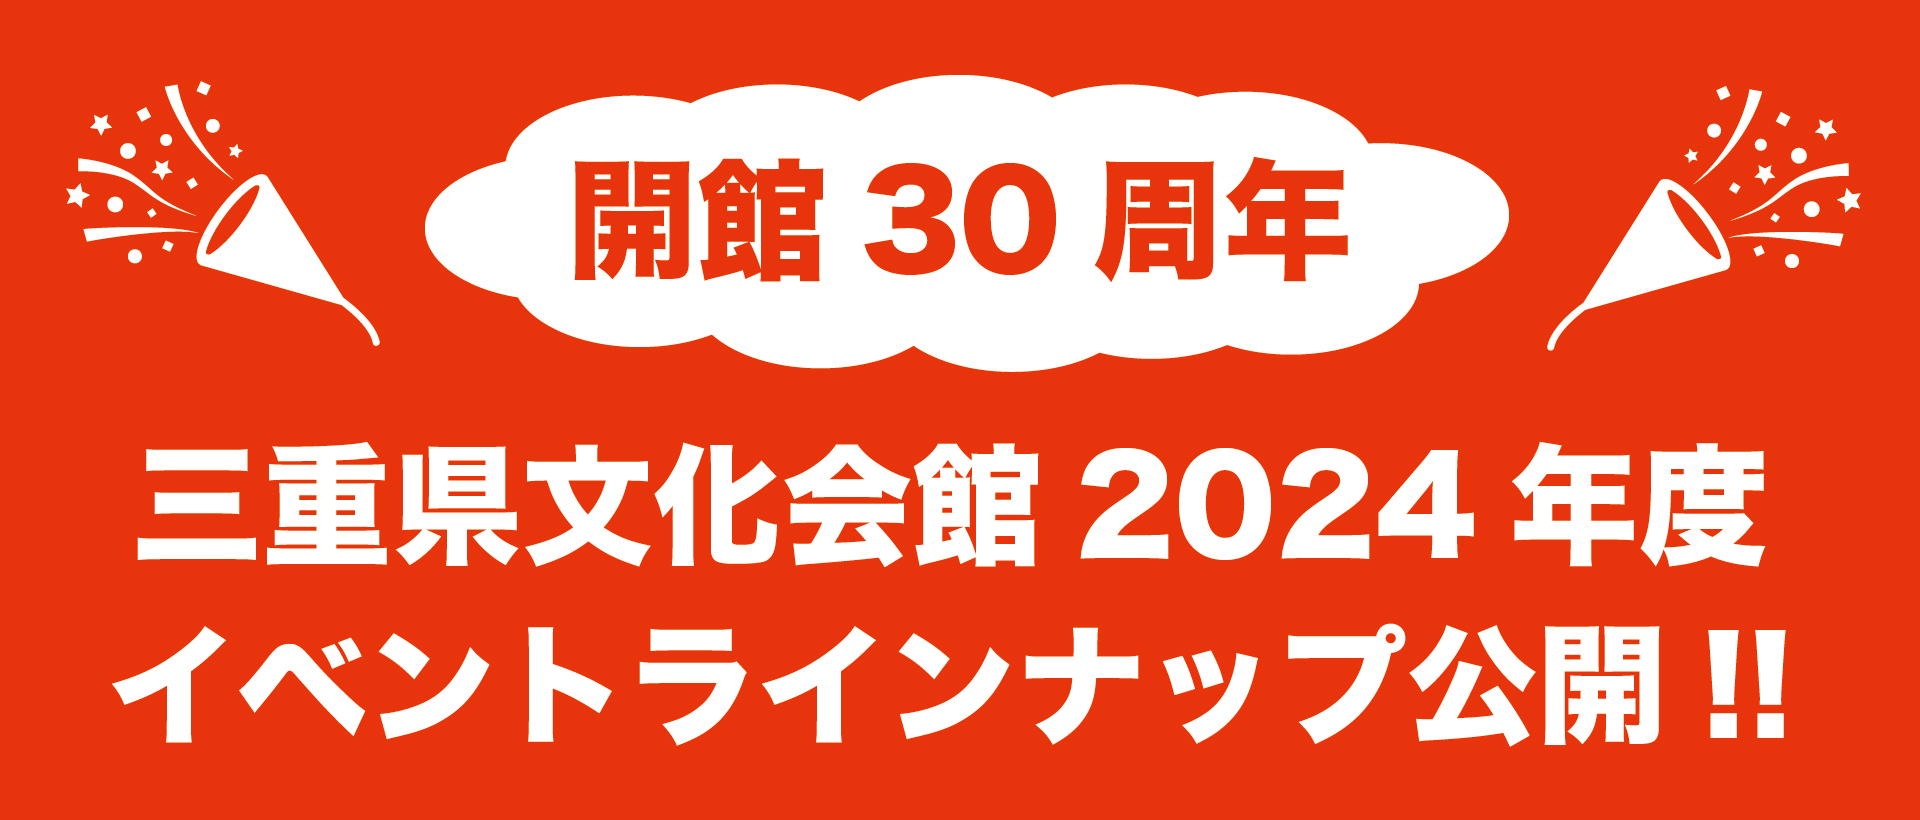 三重文2024年度イベント公開